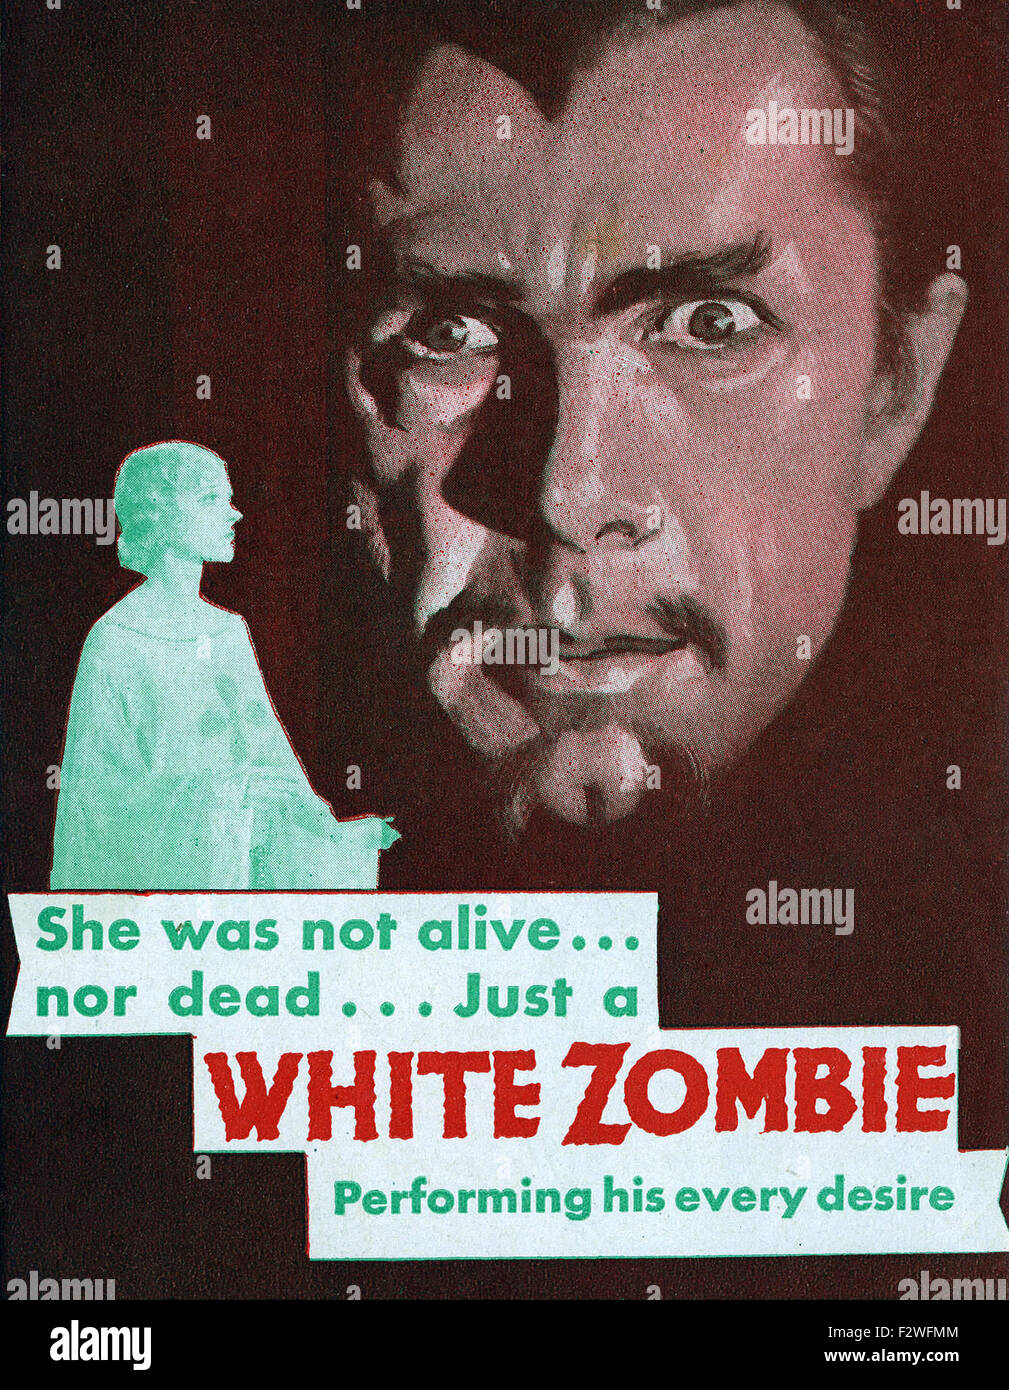 White Zombie - Movie Poster Stock Photo